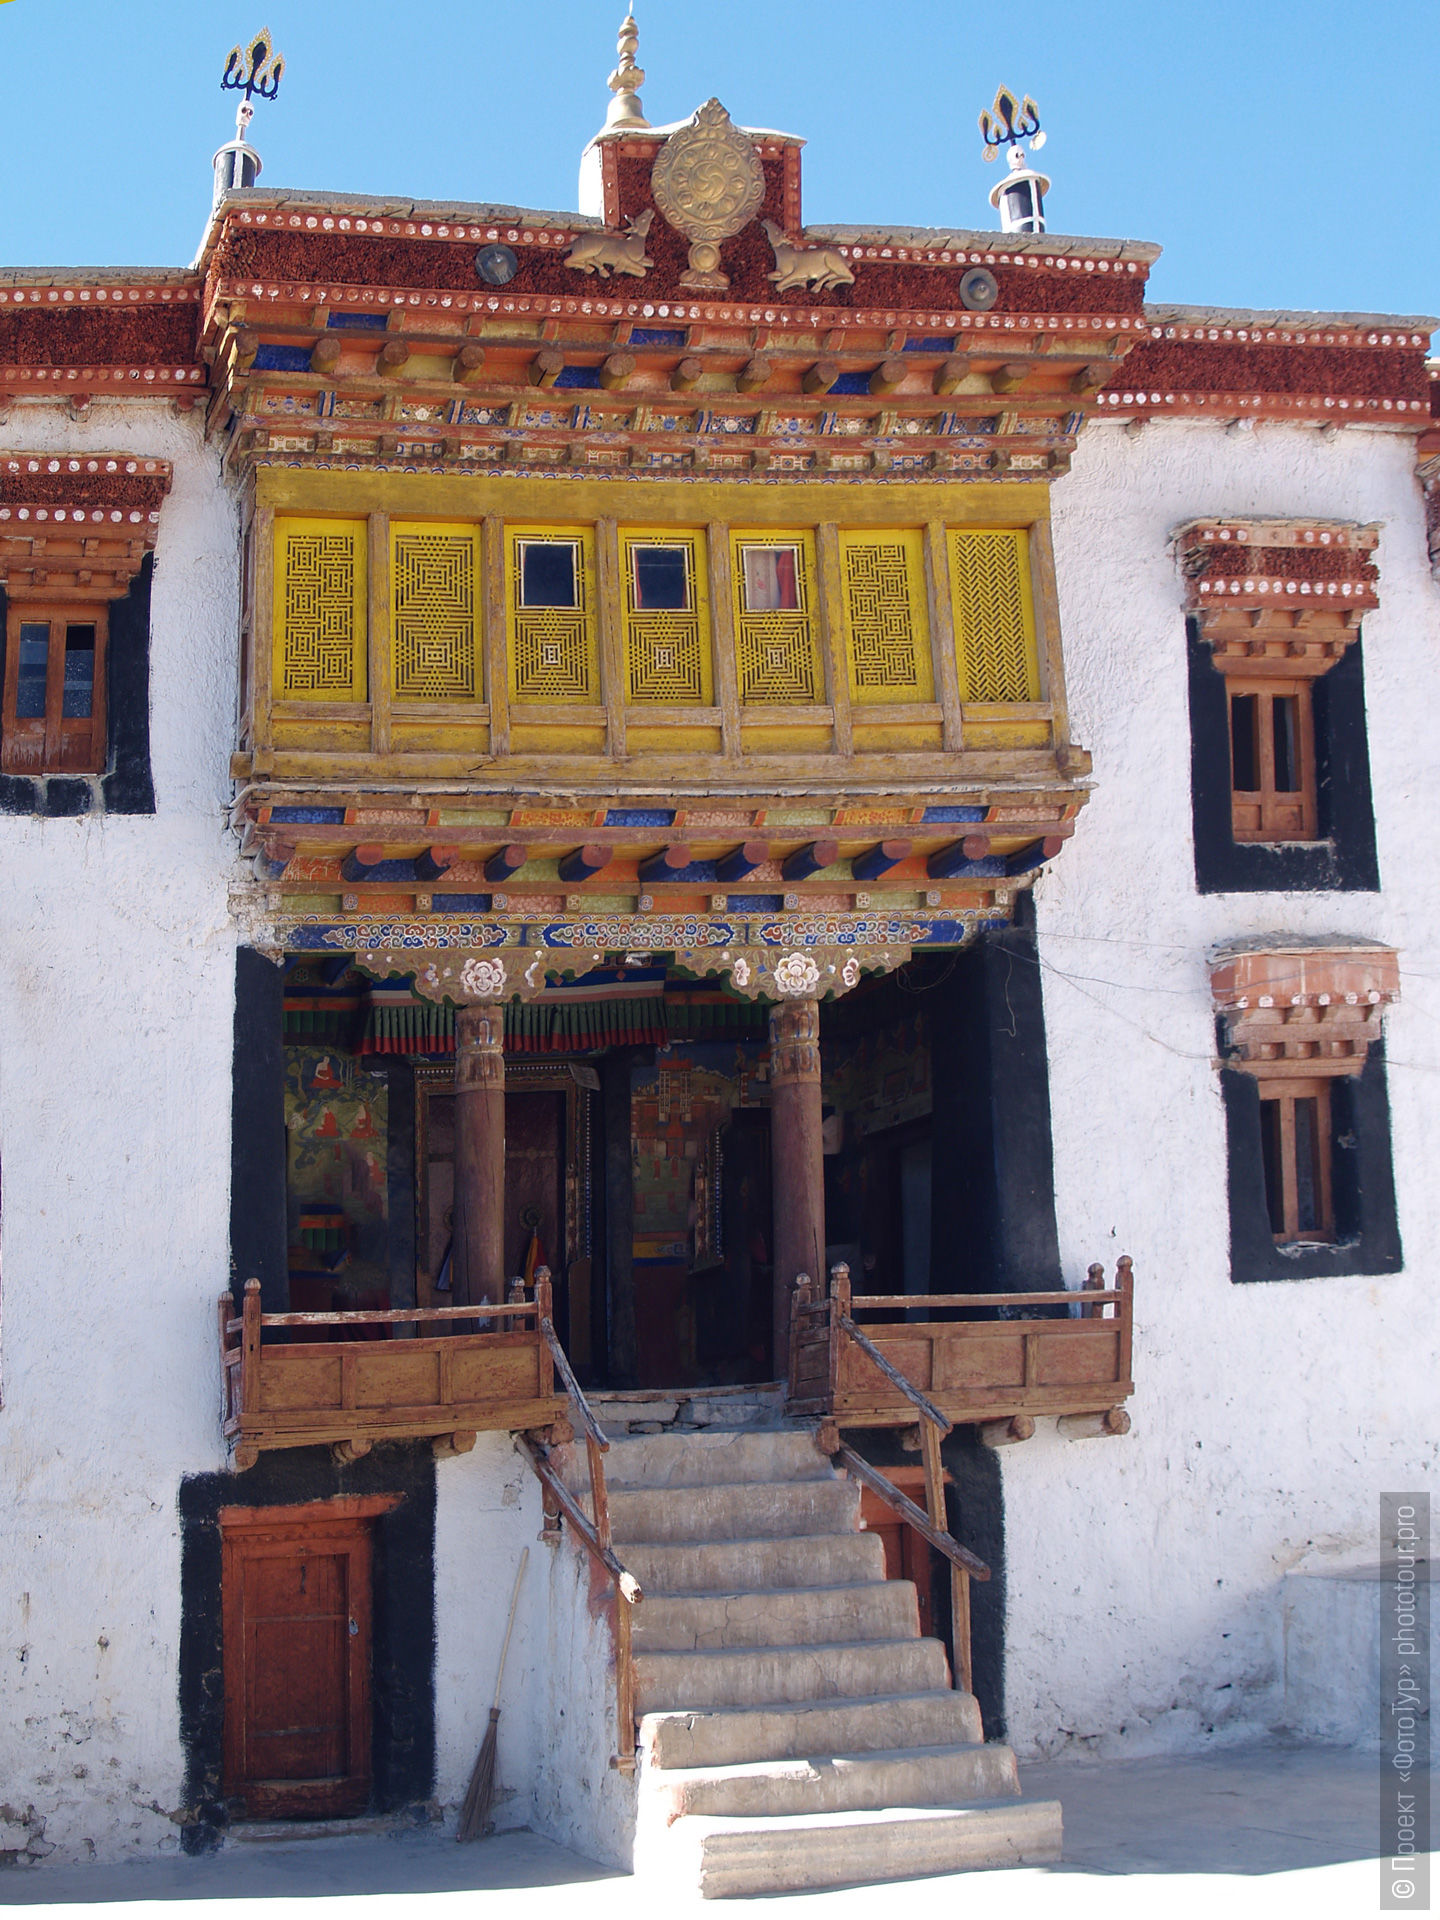 Новый друкханг буддийского монастыря Ликир Гонпа, Ладакх, Гималаи, Северная Индия.